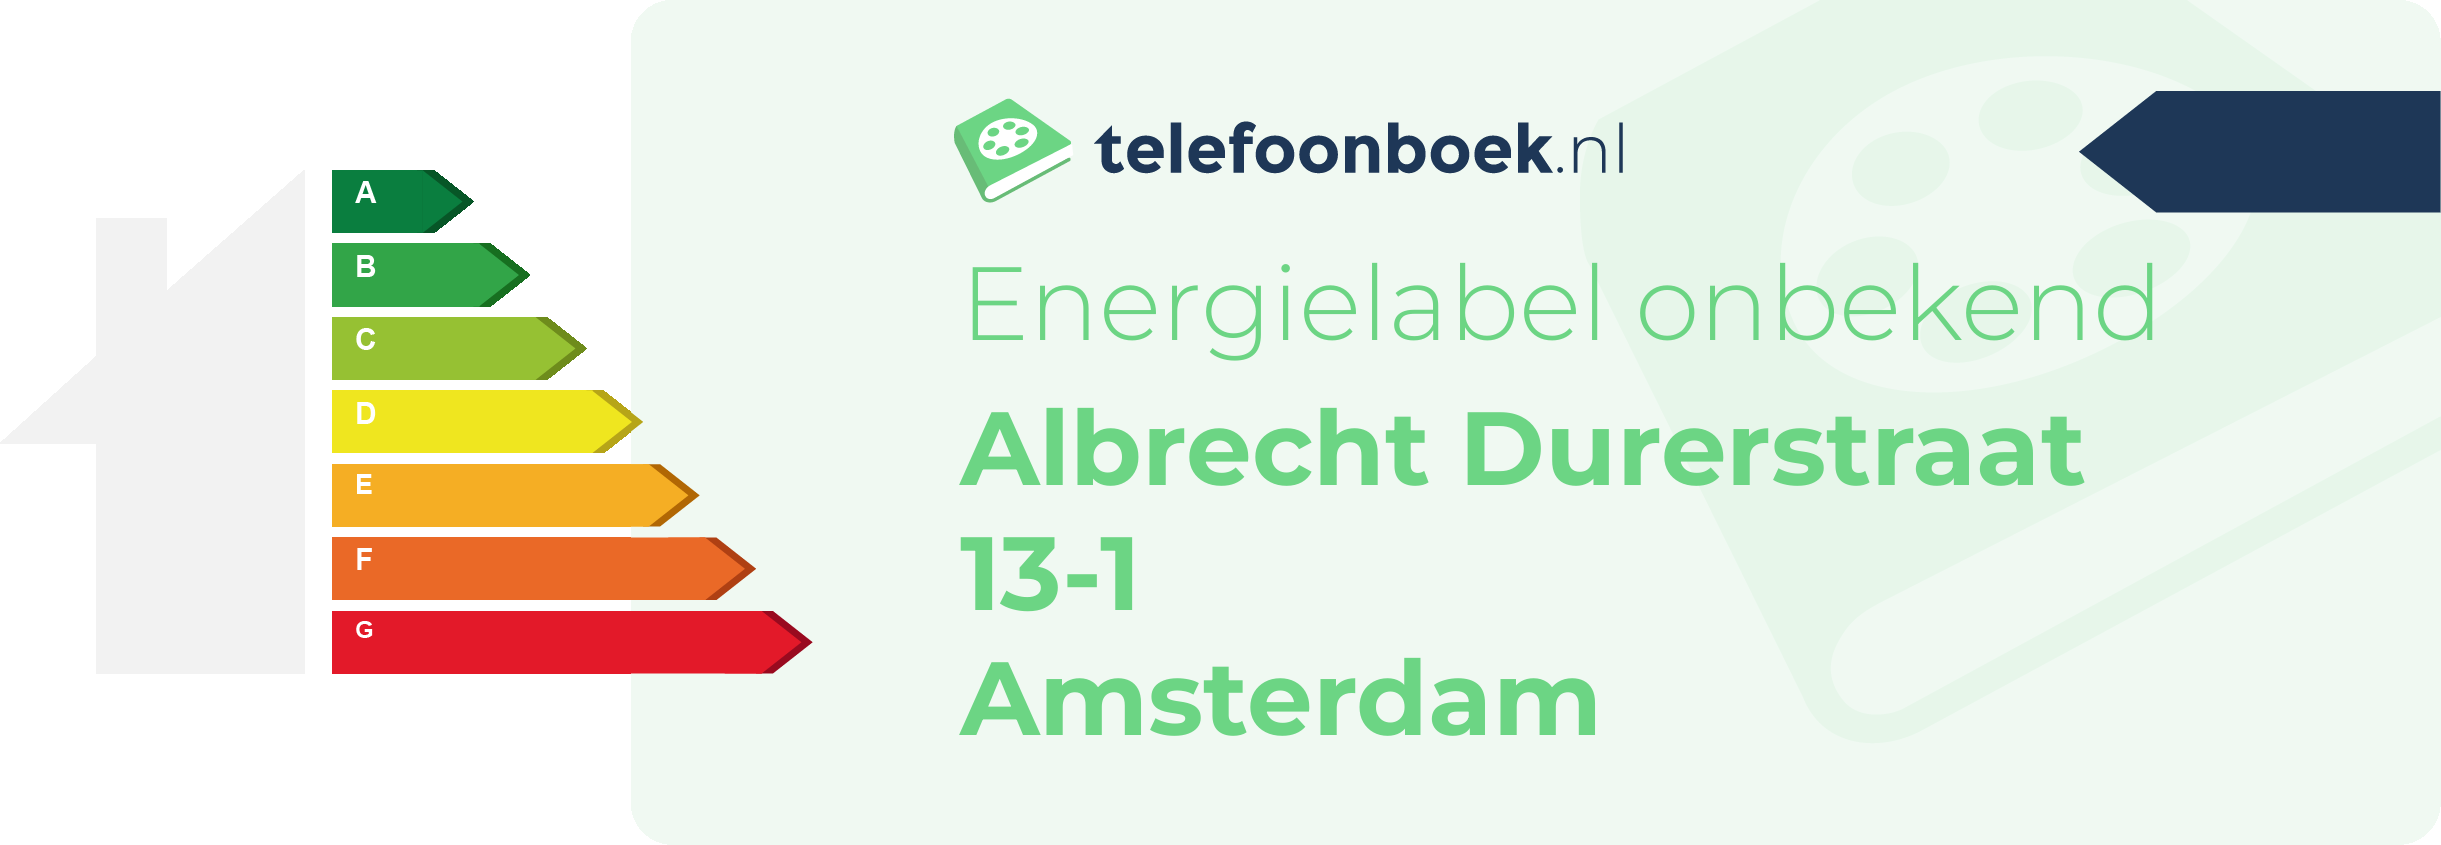 Energielabel Albrecht Durerstraat 13-1 Amsterdam